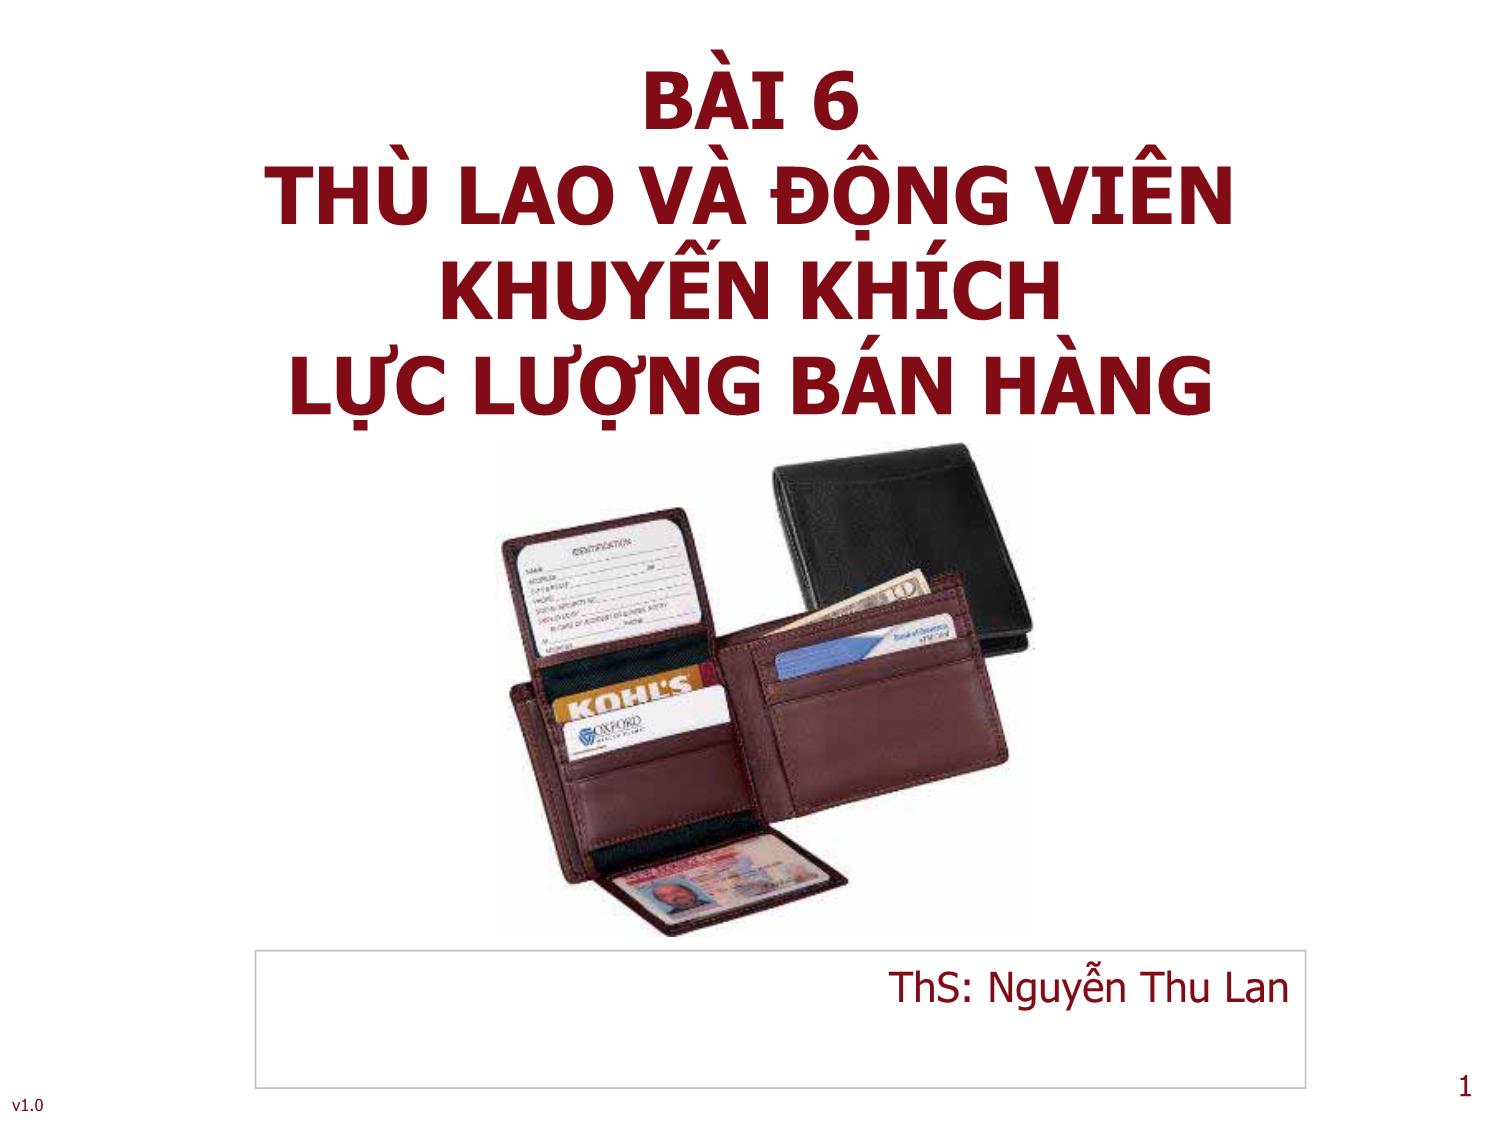 Bài giảng Quản trị bán hàng - Bài 6: Thù lao và động viên khuyến khích lực lượng bán hàng - Nguyễn Thu Lan trang 1